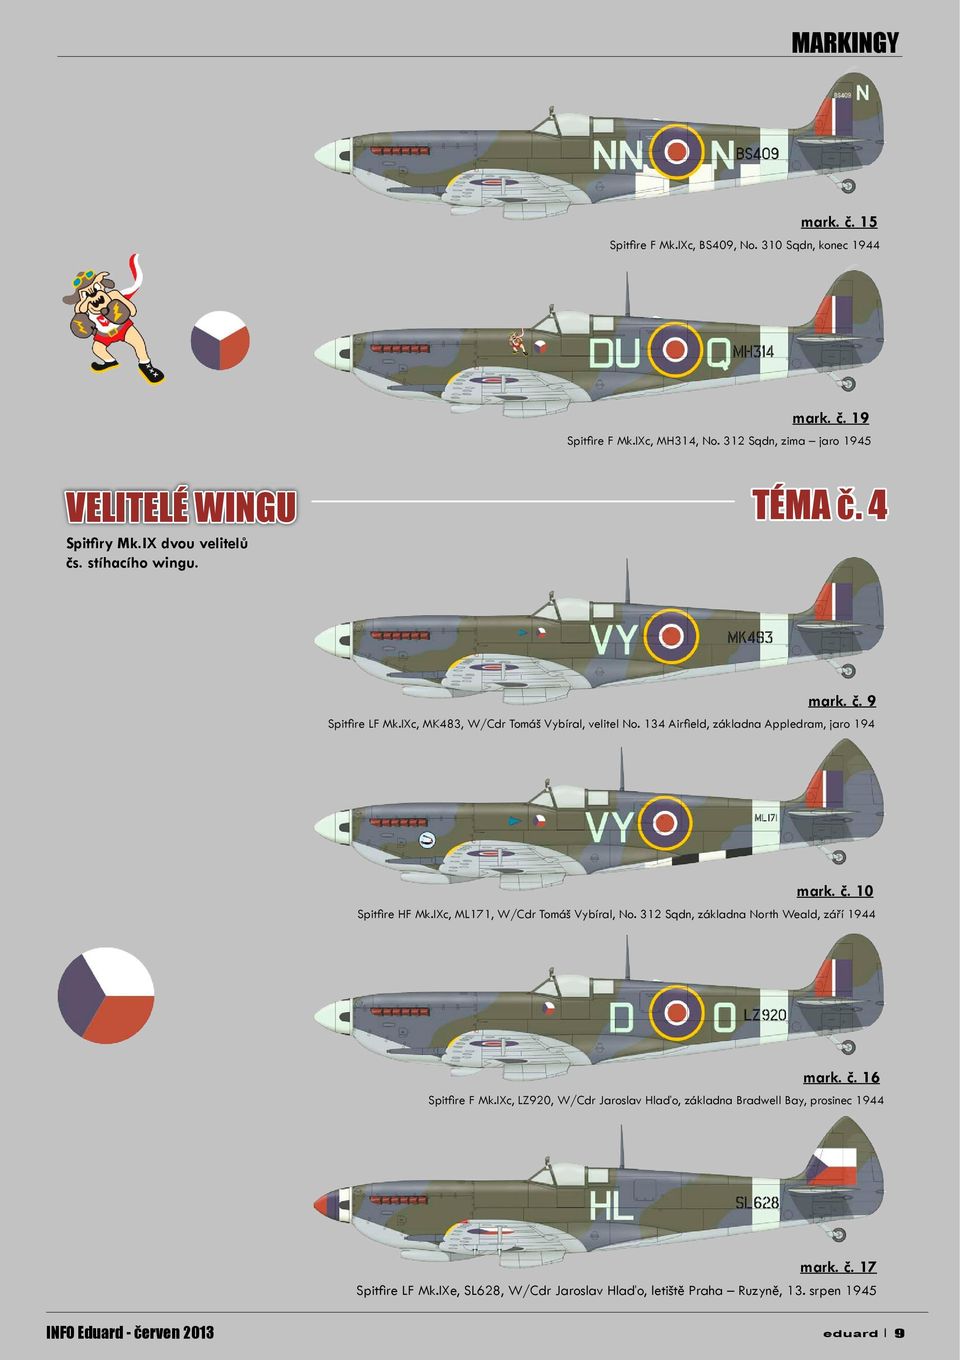 IXc, MK483, W/Cdr Tomáš Vybíral, velitel No. 134 Airfield, základna Appledram, jaro 194 mark. č. 10 Spitfire HF Mk.IXc, ML171, W/Cdr Tomáš Vybíral, No.